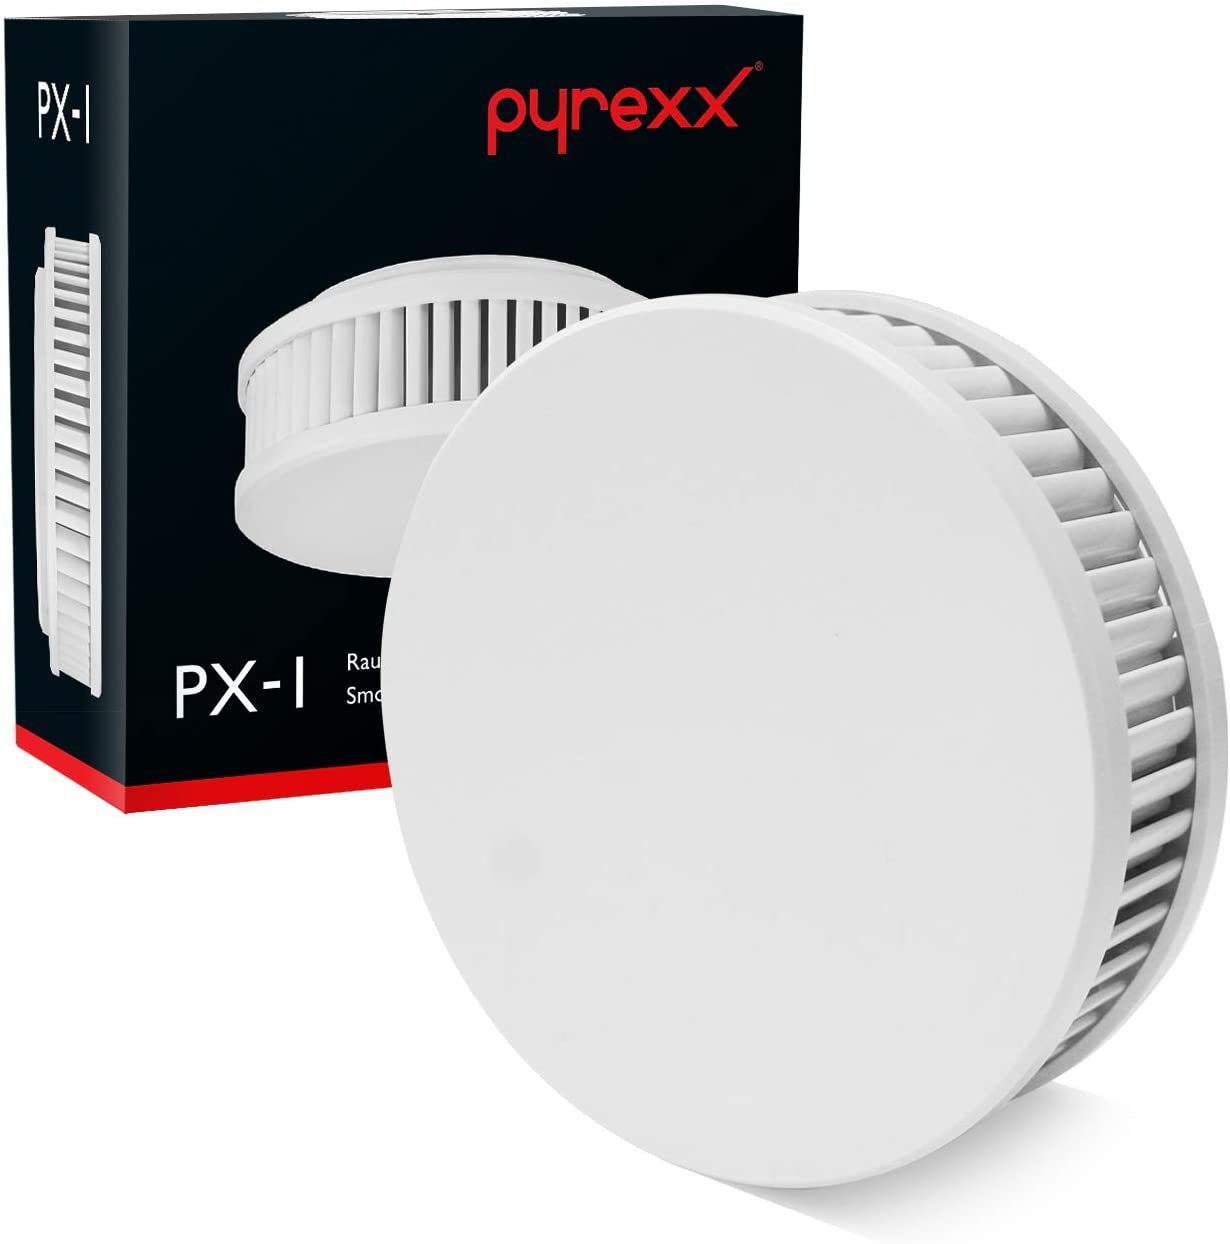 Pyrexx PX-1 Rauchwarnmelder Weiß - 7er Set Rauchmelder